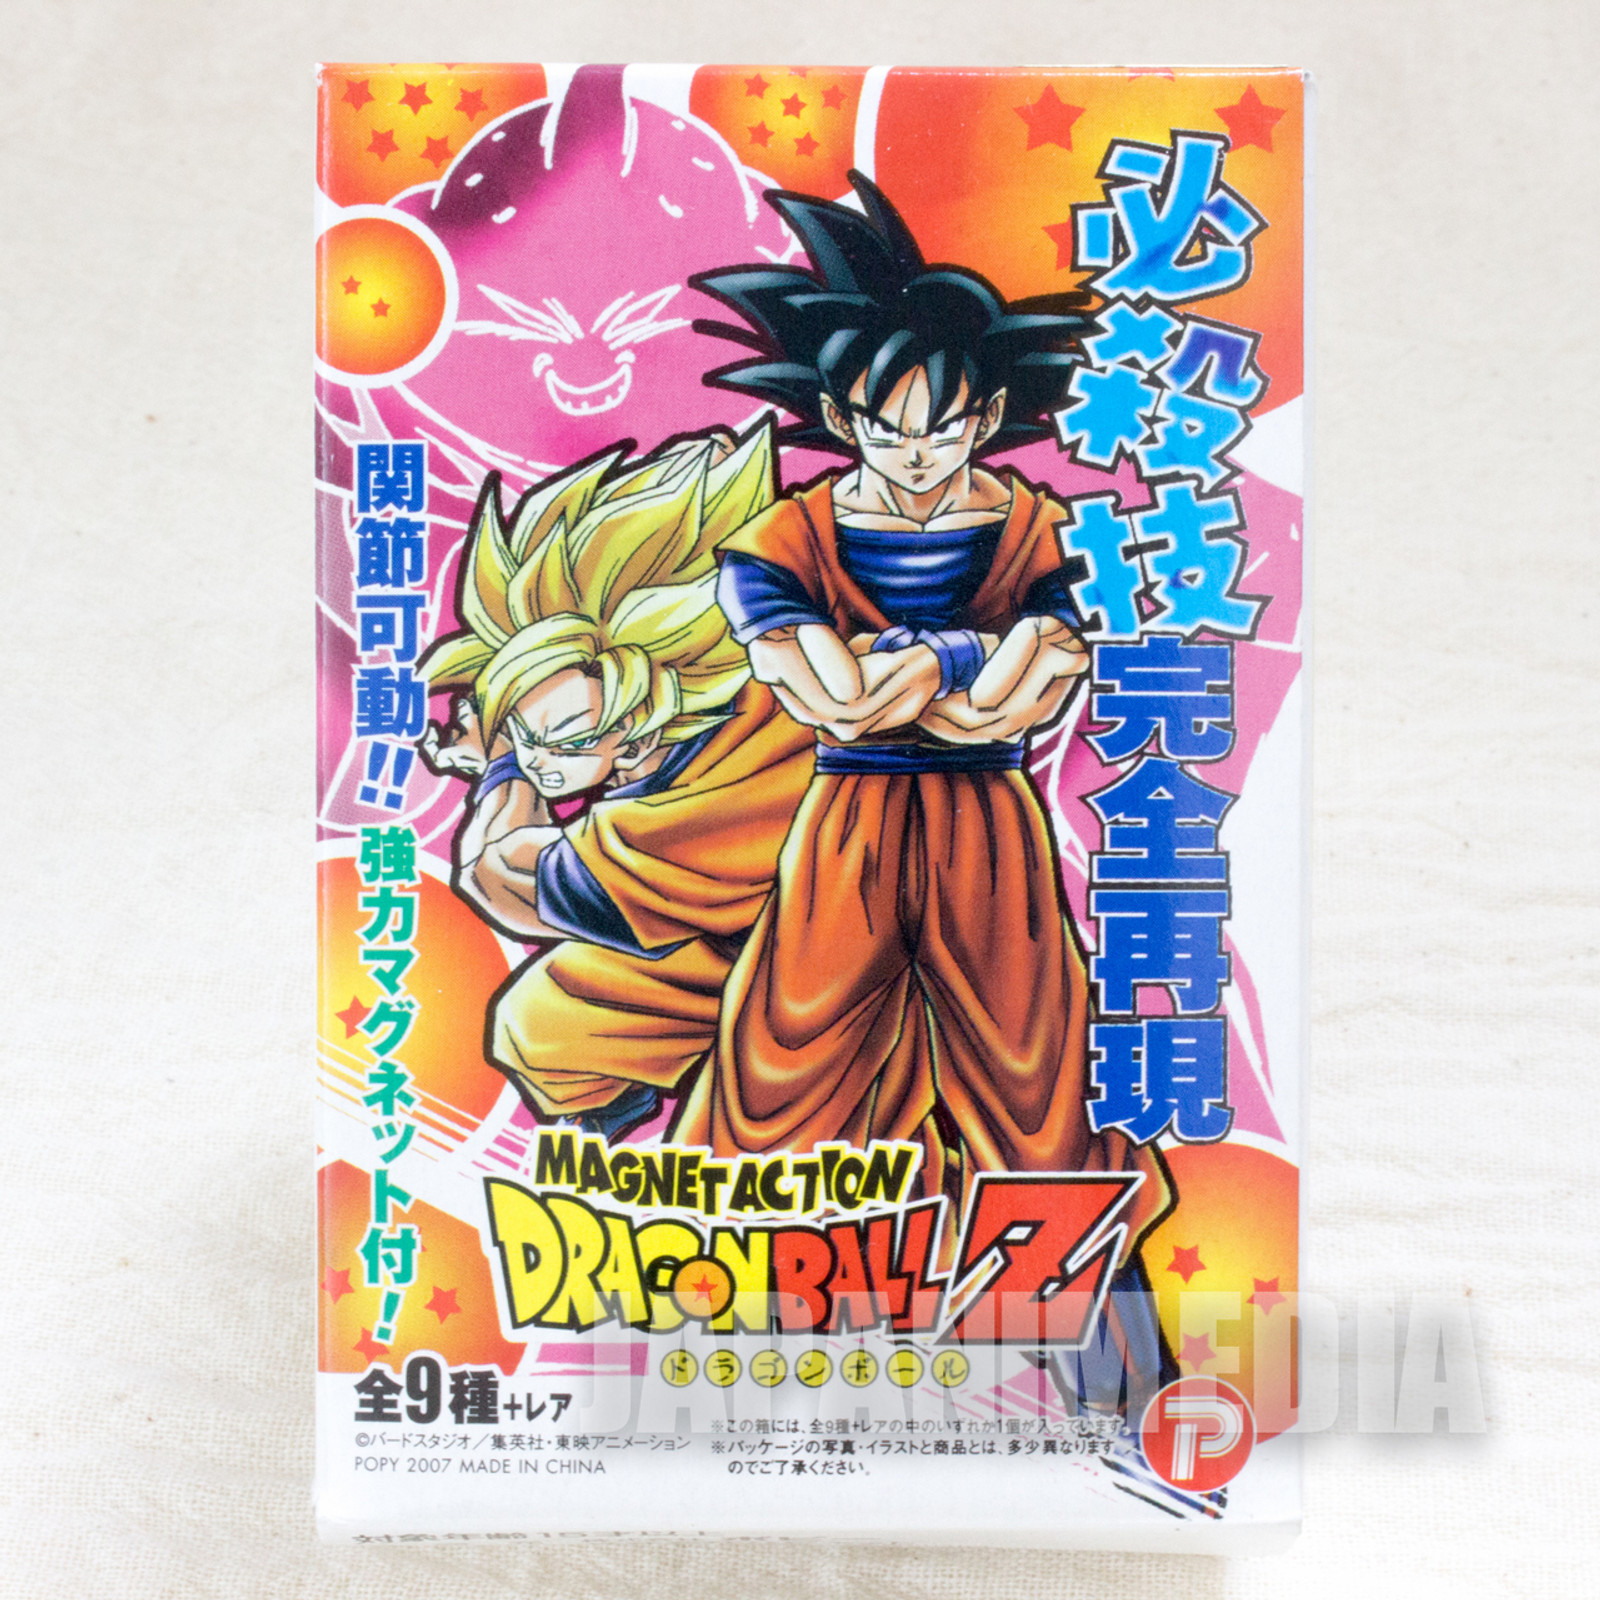 Daiko O Saiyajin on X: Novo poster de Dragon ball Super: Super